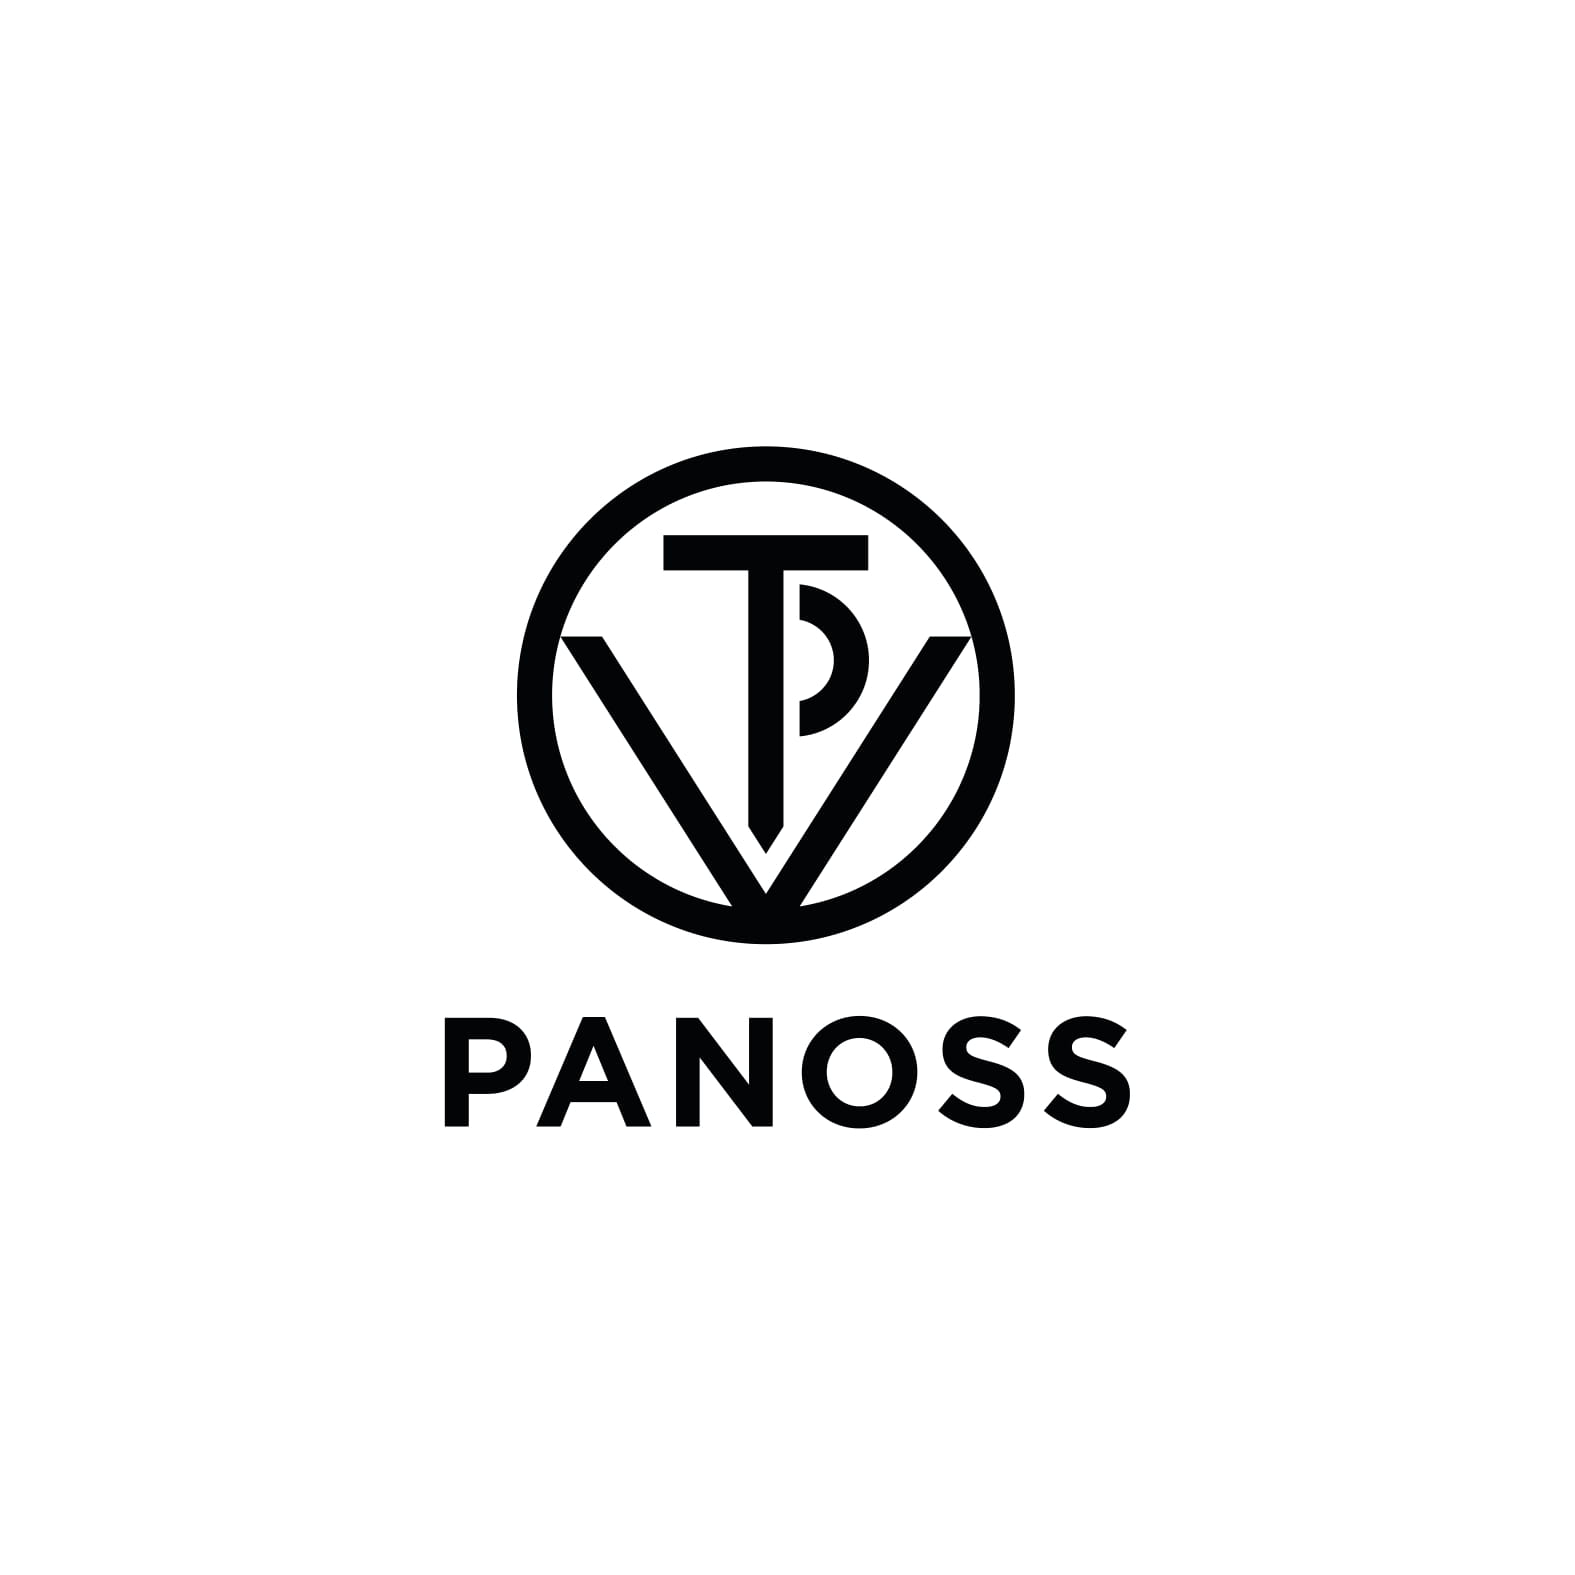 Panoss 1 - logo-1